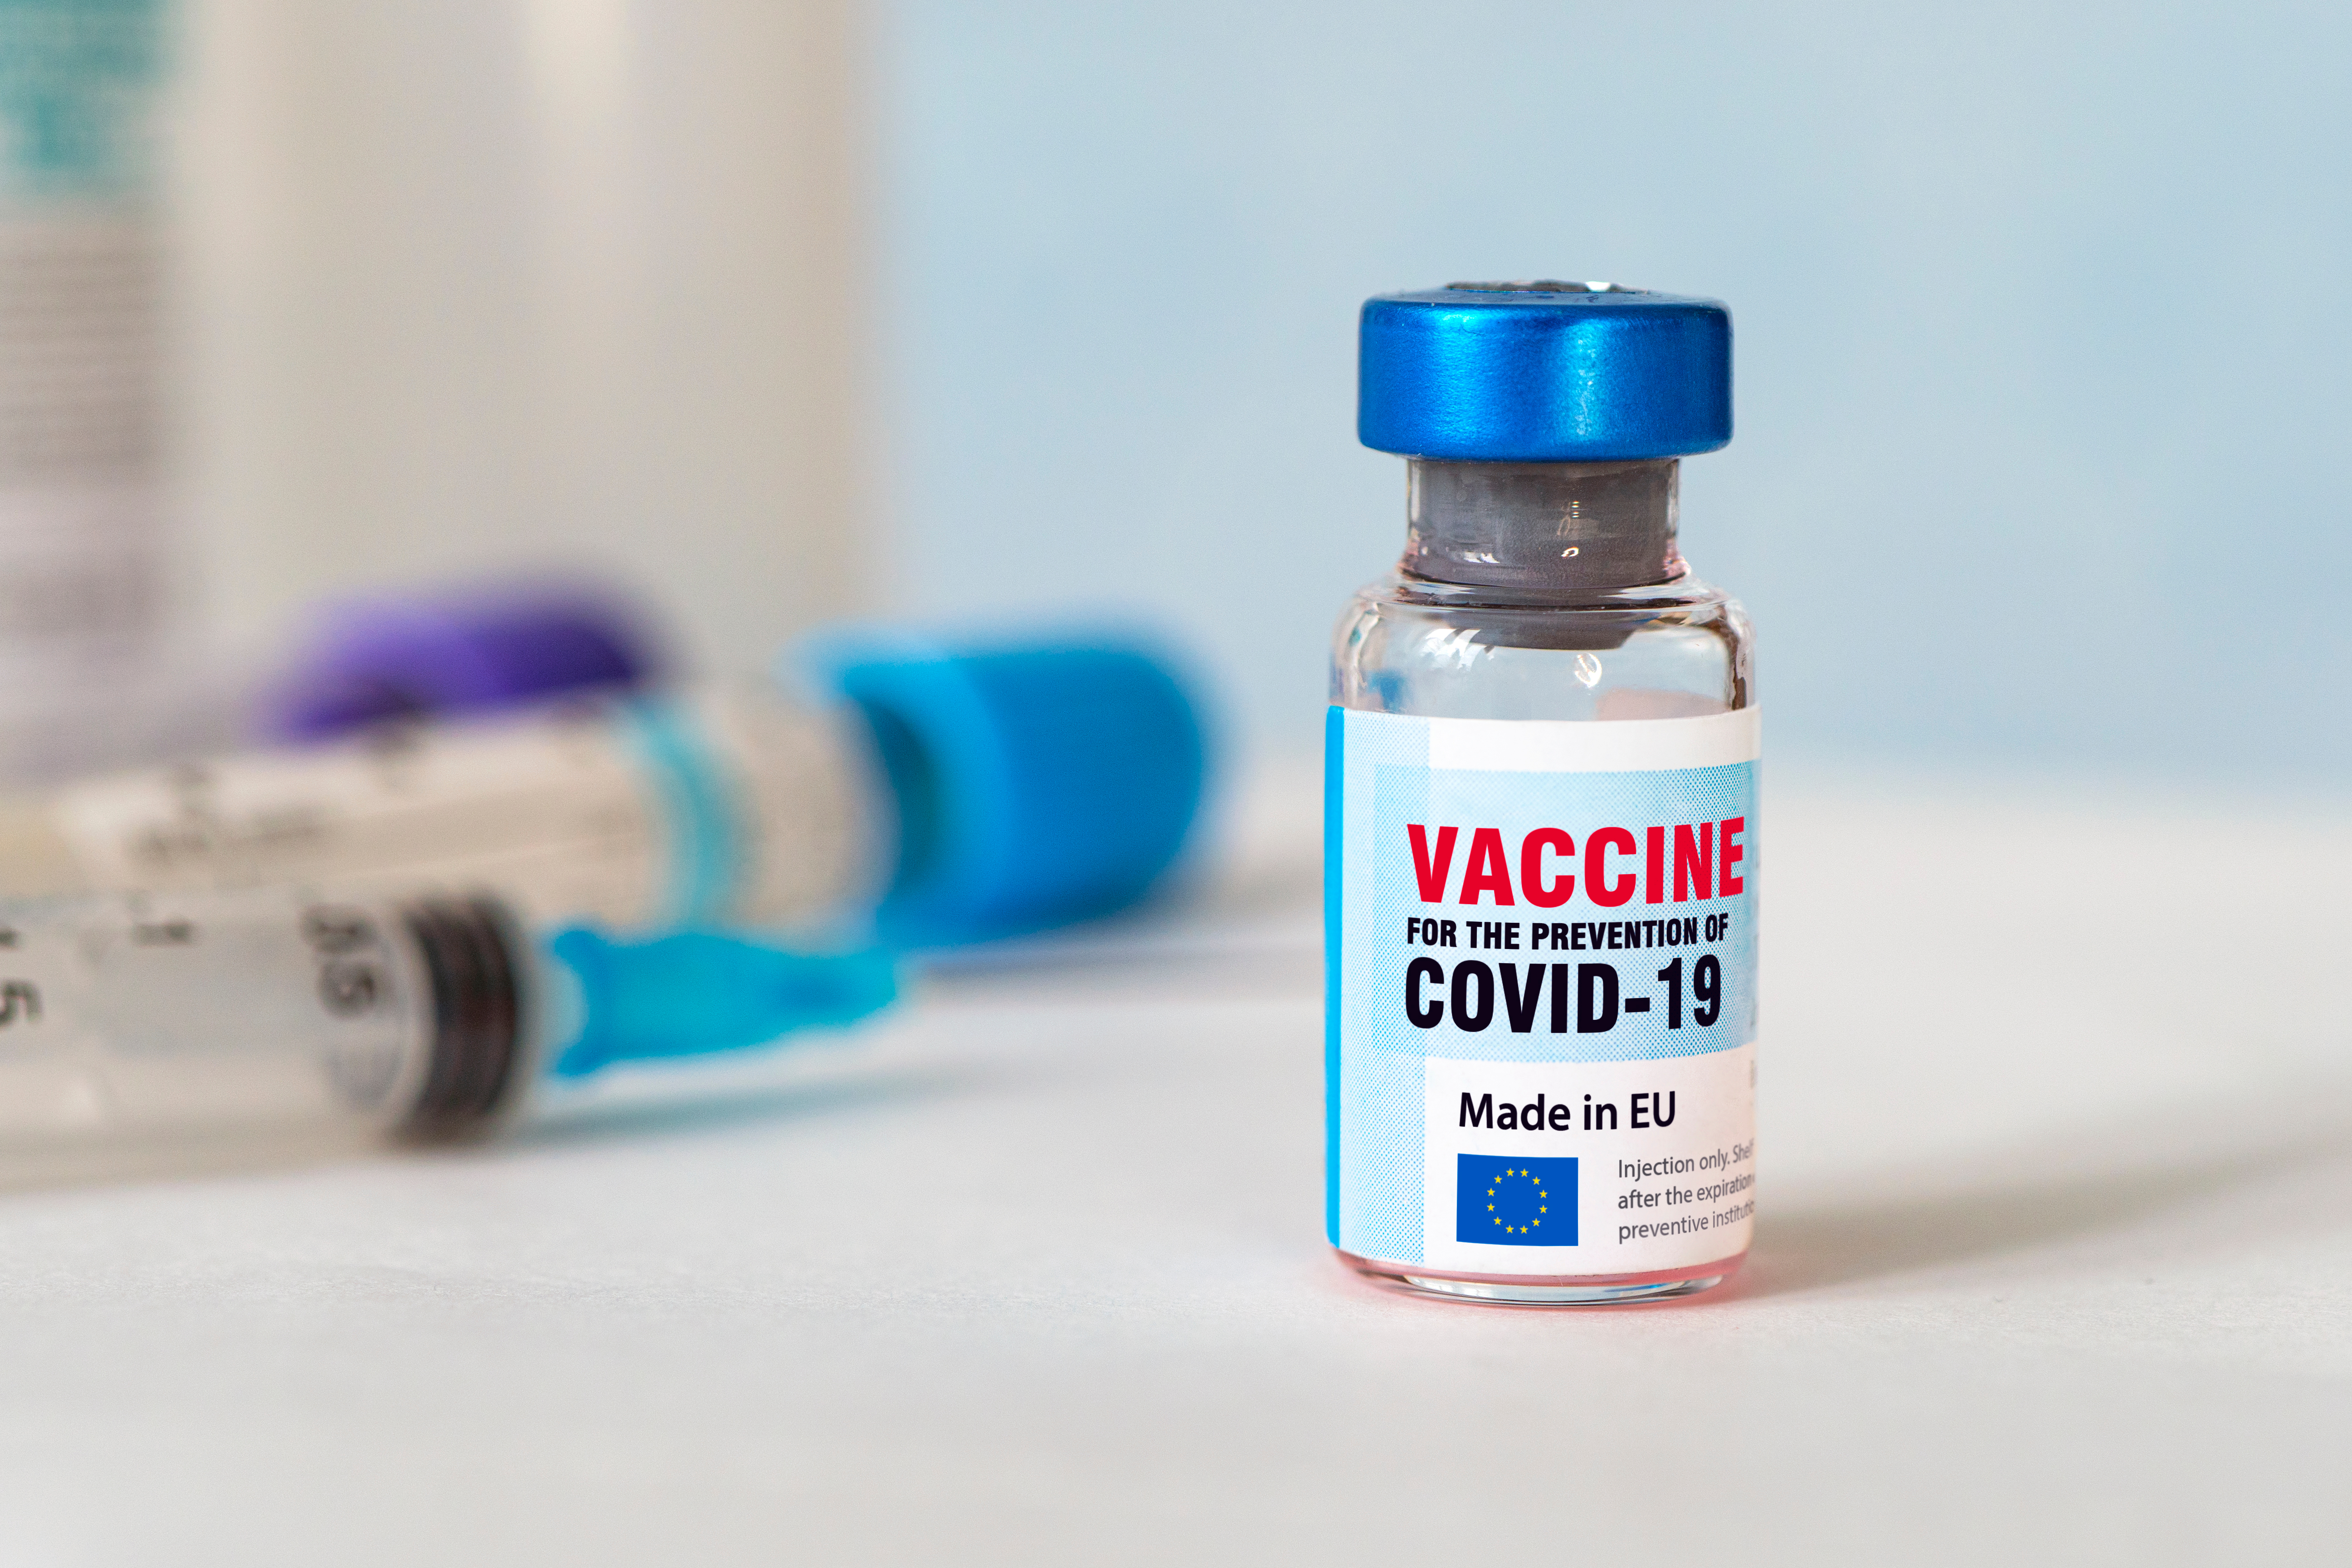 Ξαφνική αλλαγή στην περίοδο: Μήπως «φταίει» το εμβόλιο κατά του κοροναϊού;